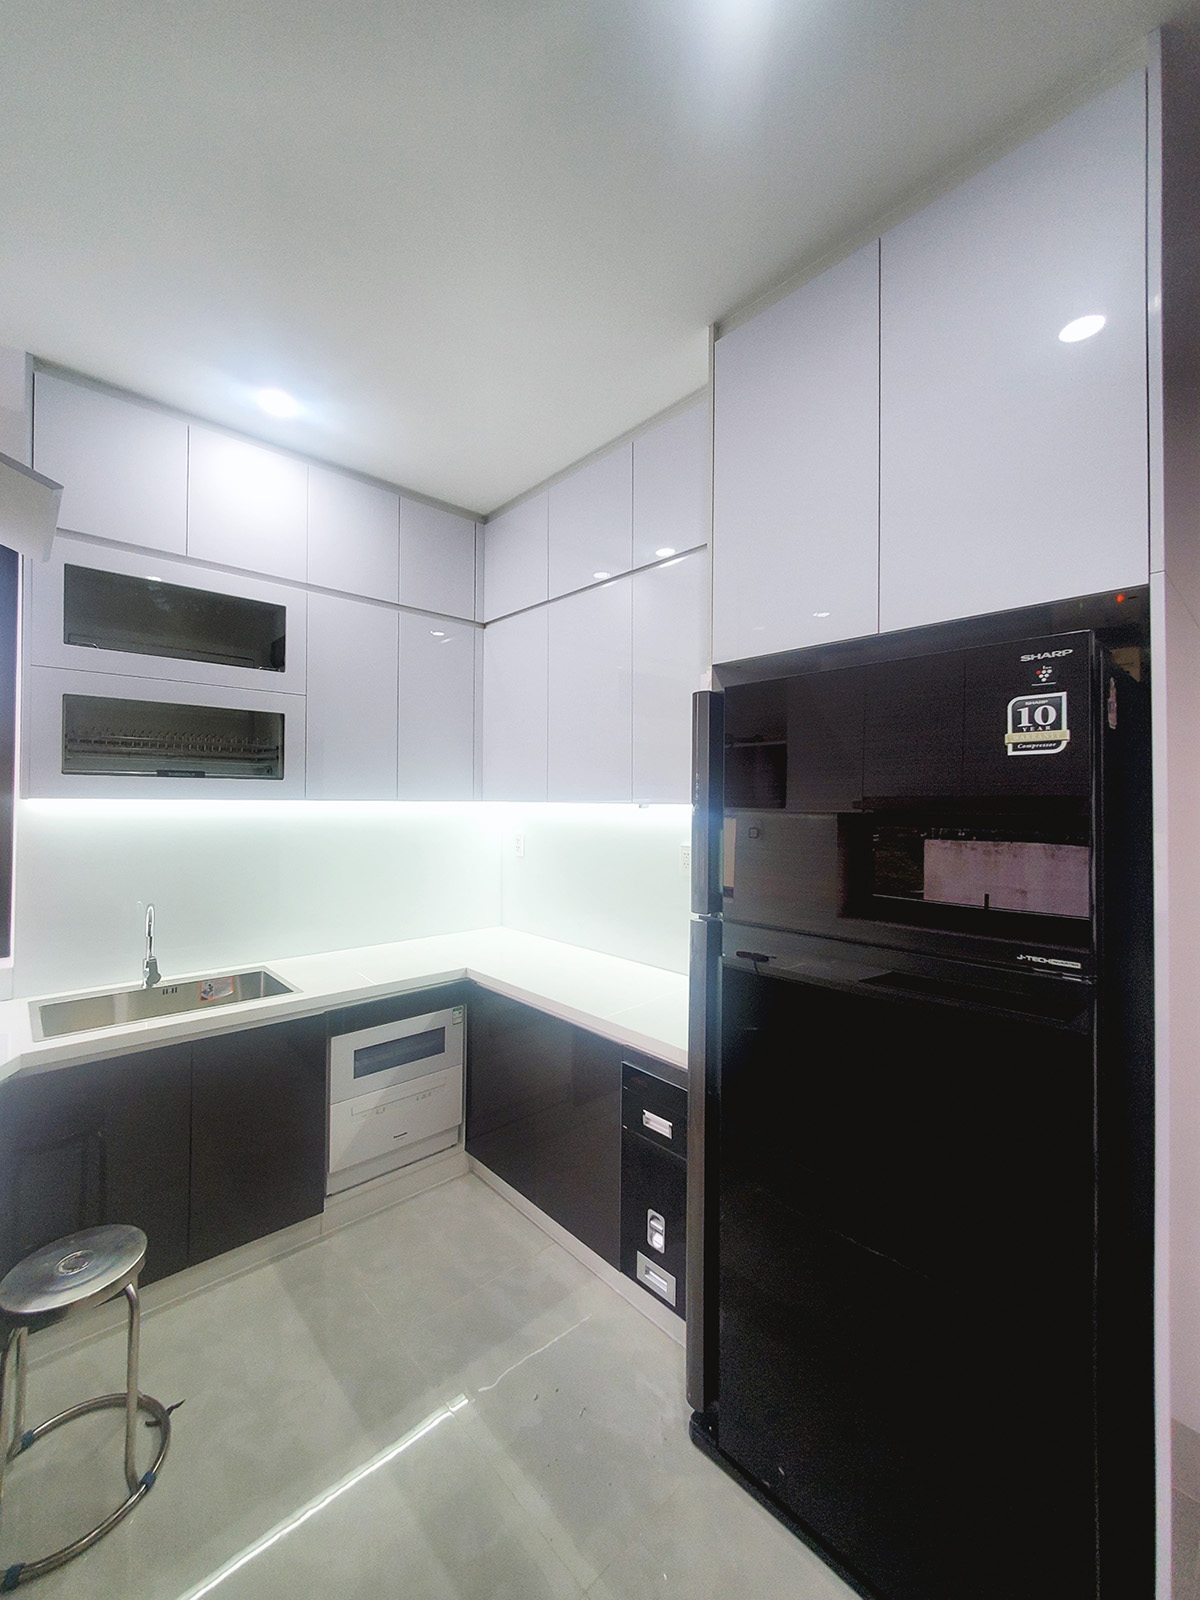 Phòng bếp, phong cách Hiện đại Modern, hoàn thiện nội thất, nhà phố Gò Vấp